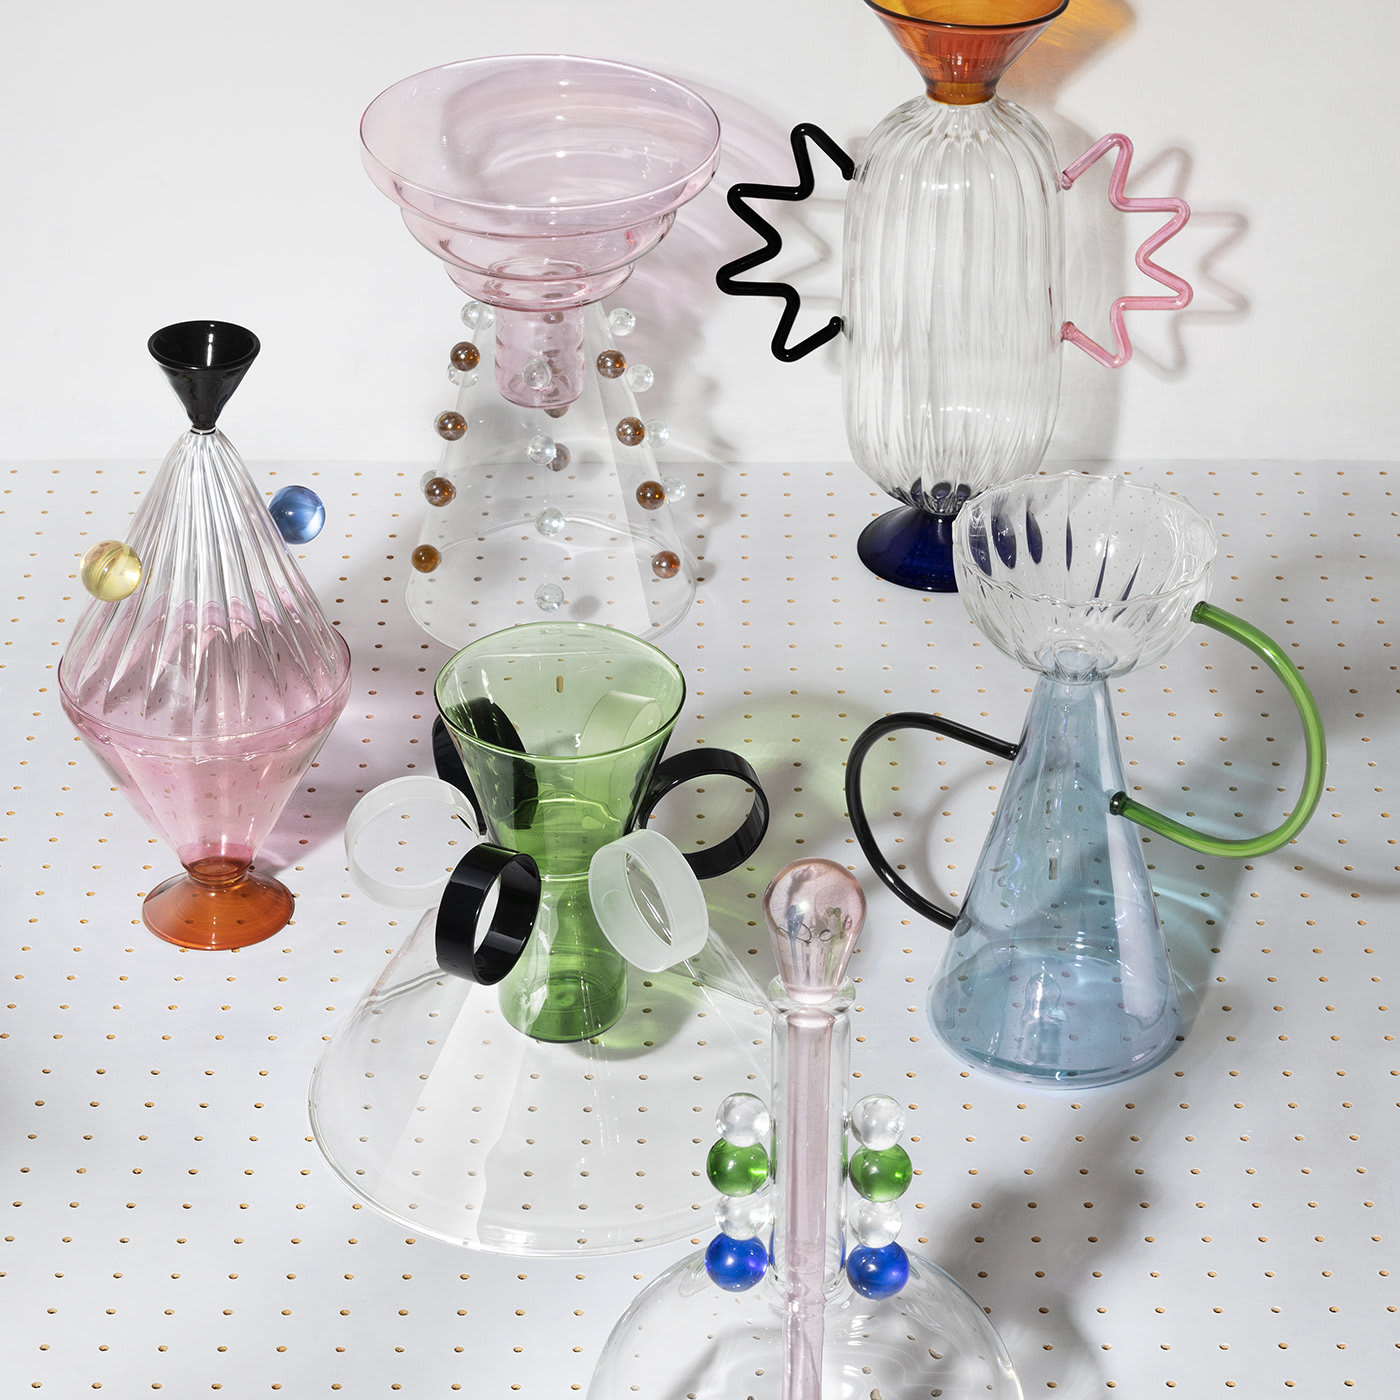 Arabesque 03 Hand-Blown Glass Vase - Serena Confalonieri